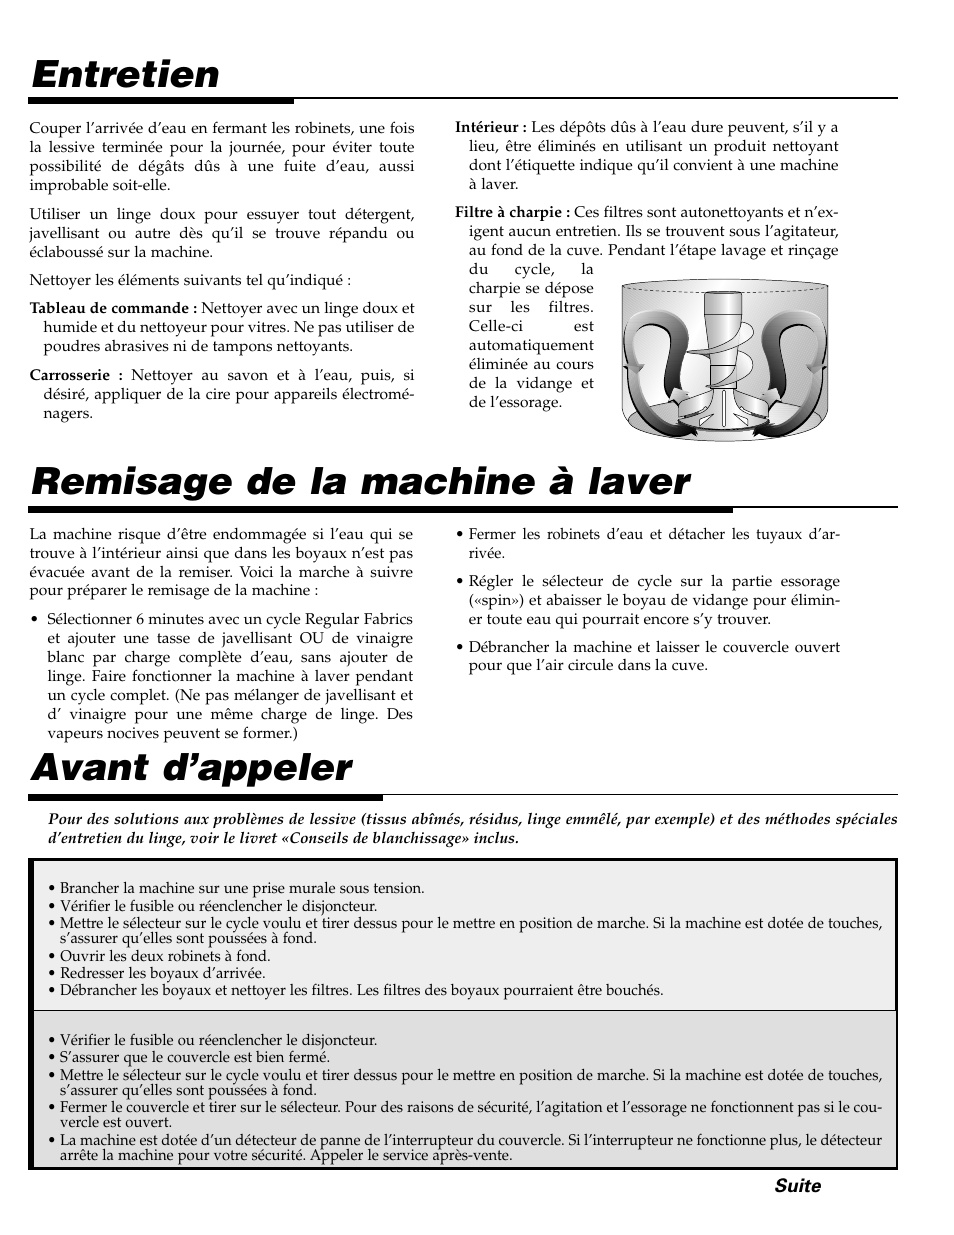 Remisage de la machine à laver, Entretien avant d’appeler | Maytag LAT2500AAE User Manual | Page 17 / 28